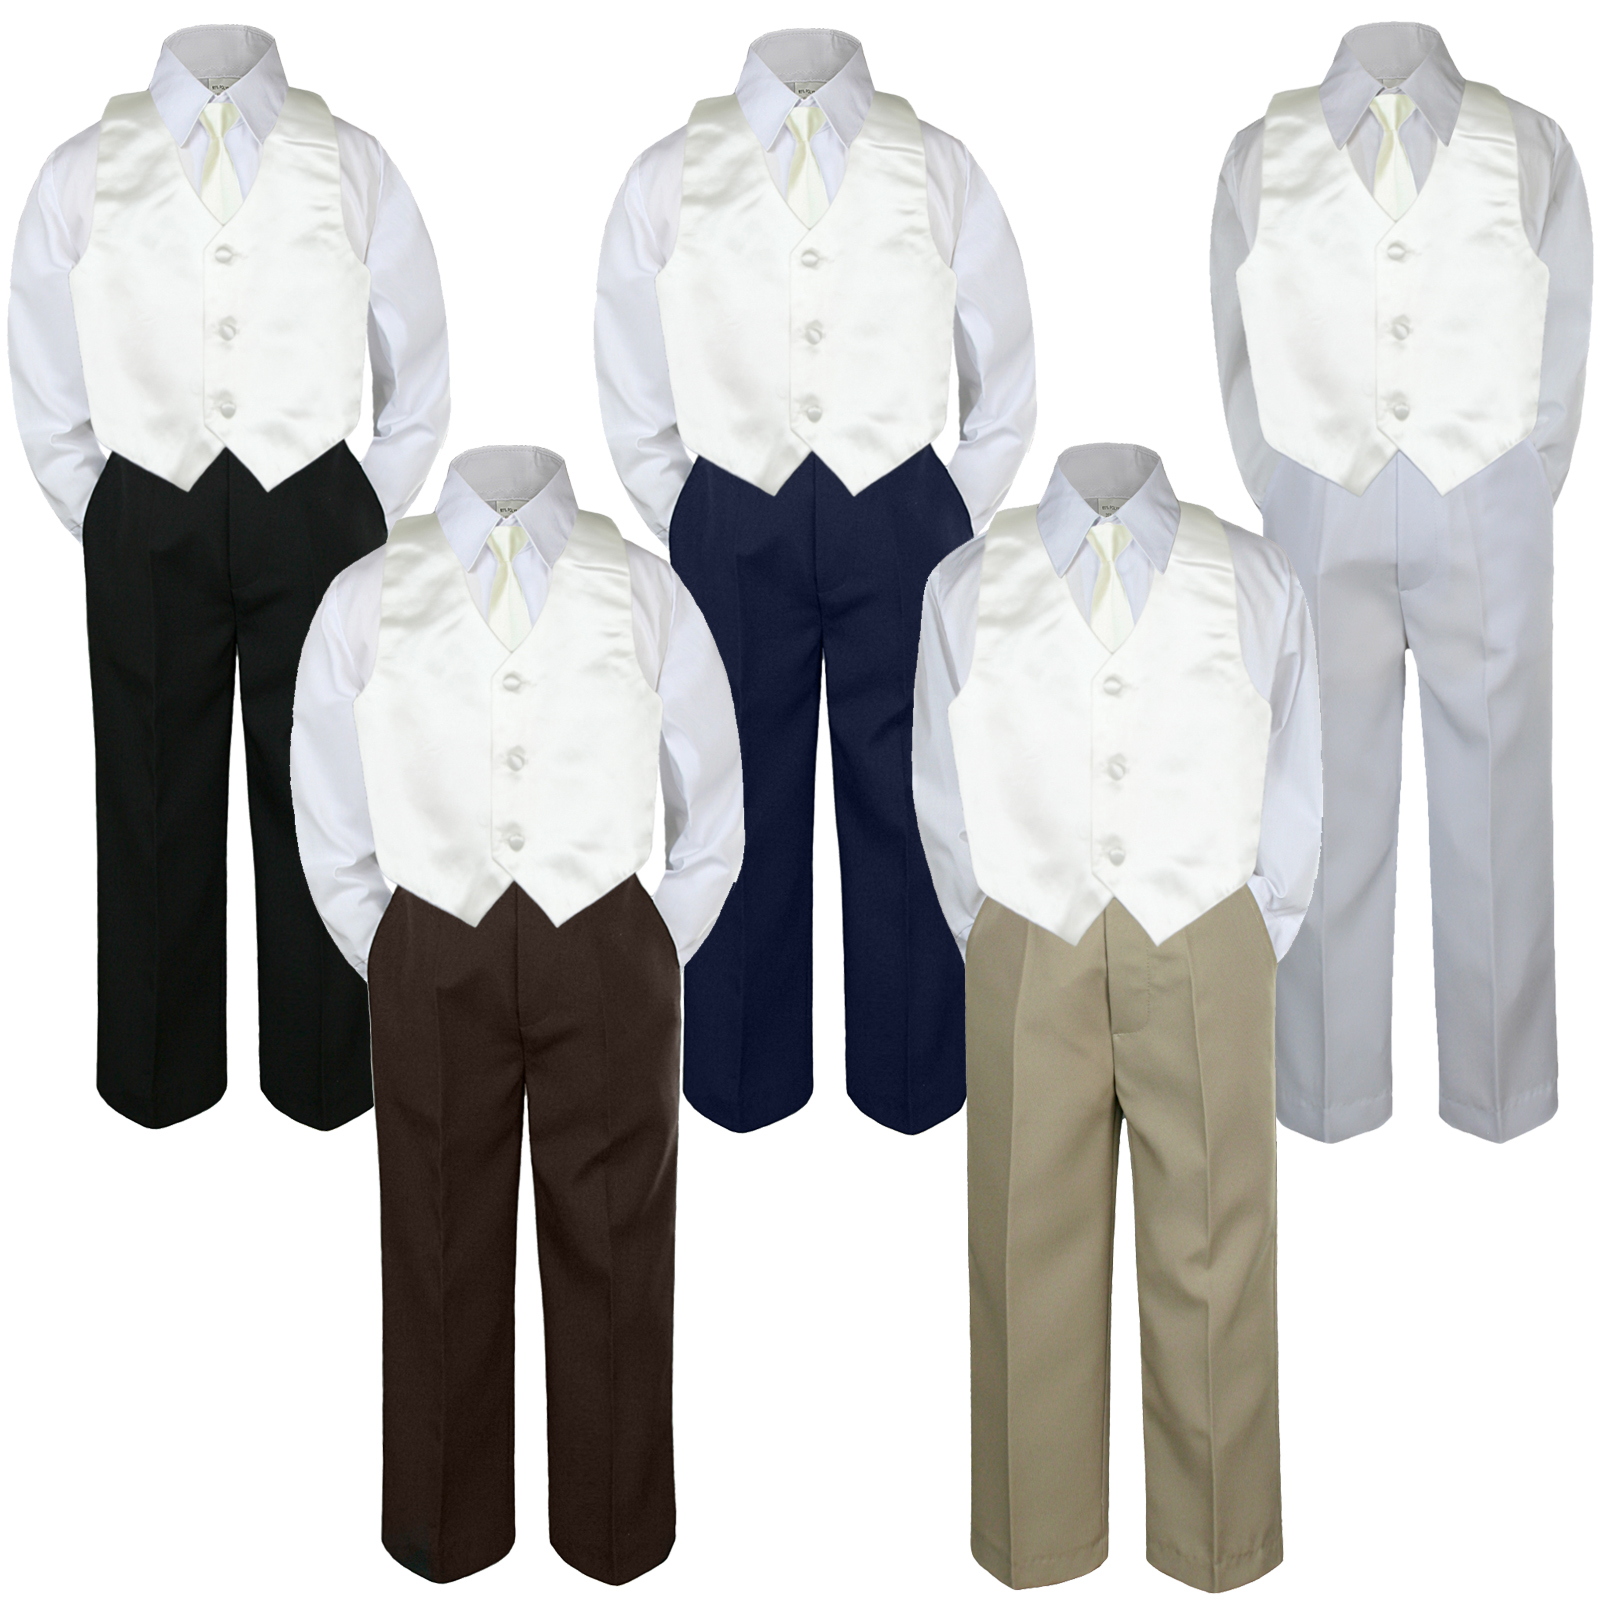 Unotux 4pc 5 6 7 Kid Child Children Boys Shirt Black Pants Suits Tuxedo Formal Wedding Party Ivory Necktie Vest Off white Set